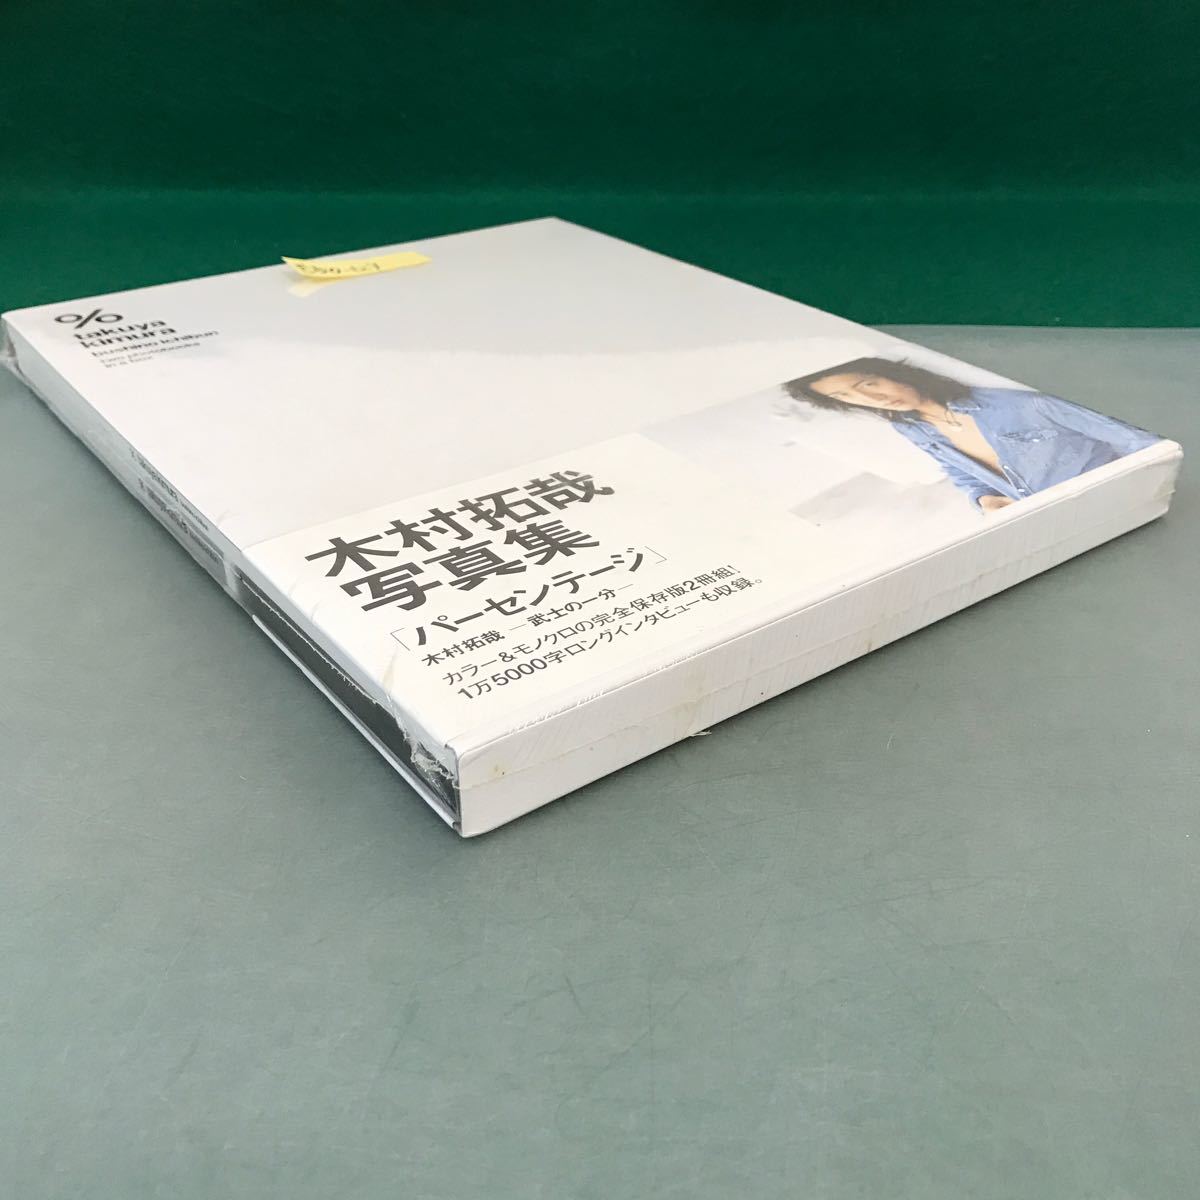 E50-124 木村拓哉 写真集「パーセンテージ」two photobooks in a box 未開封_画像2